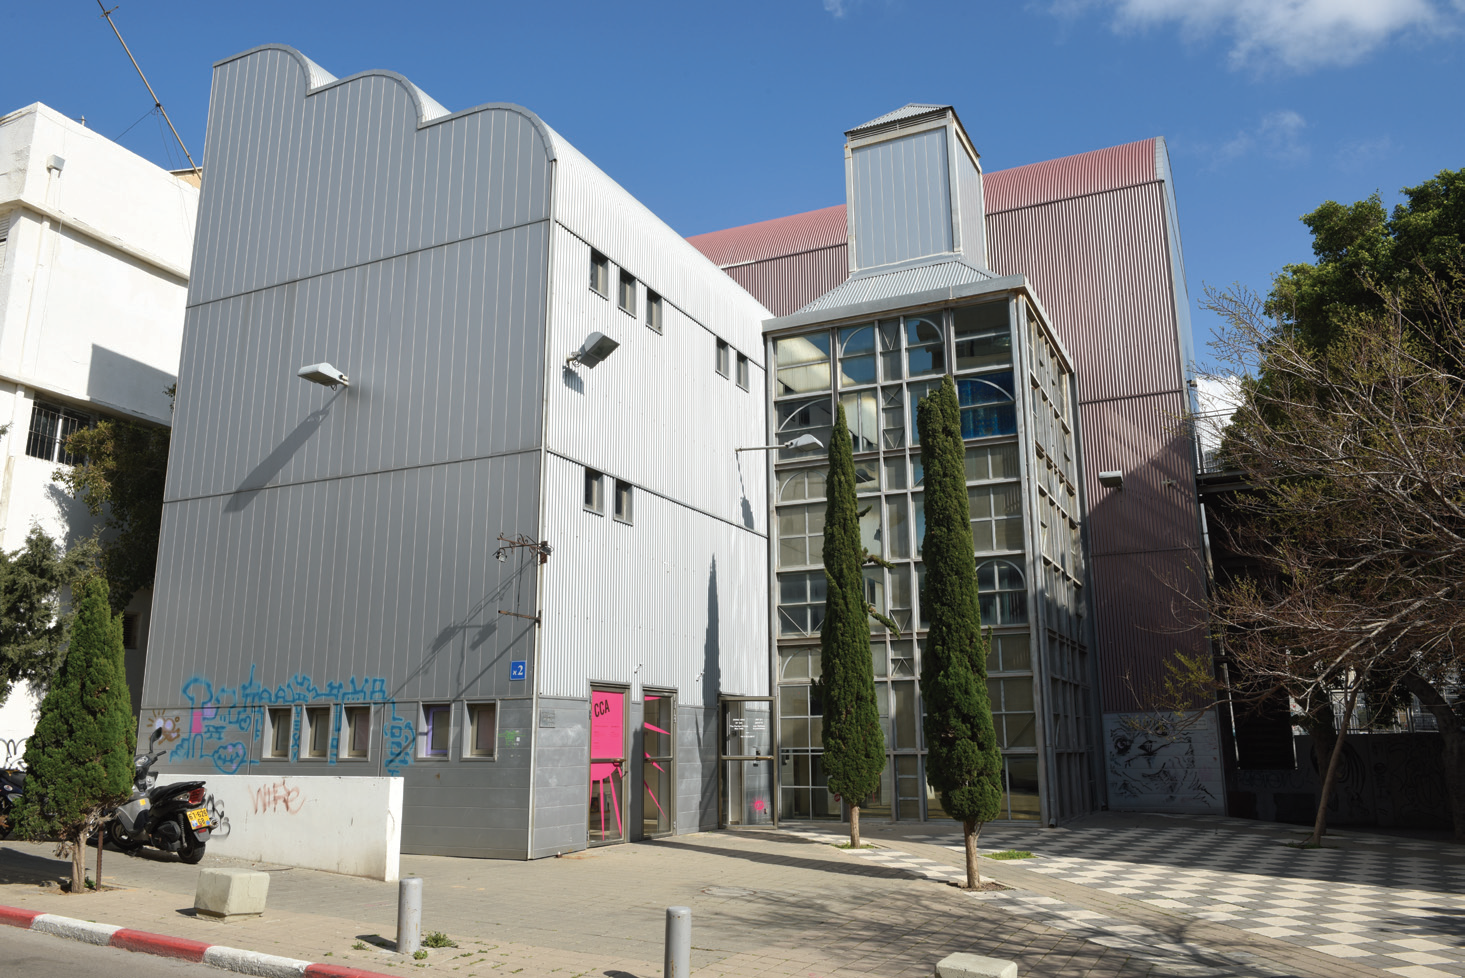 The Israel Pollak Tel Aviv Center for Contemporary Art